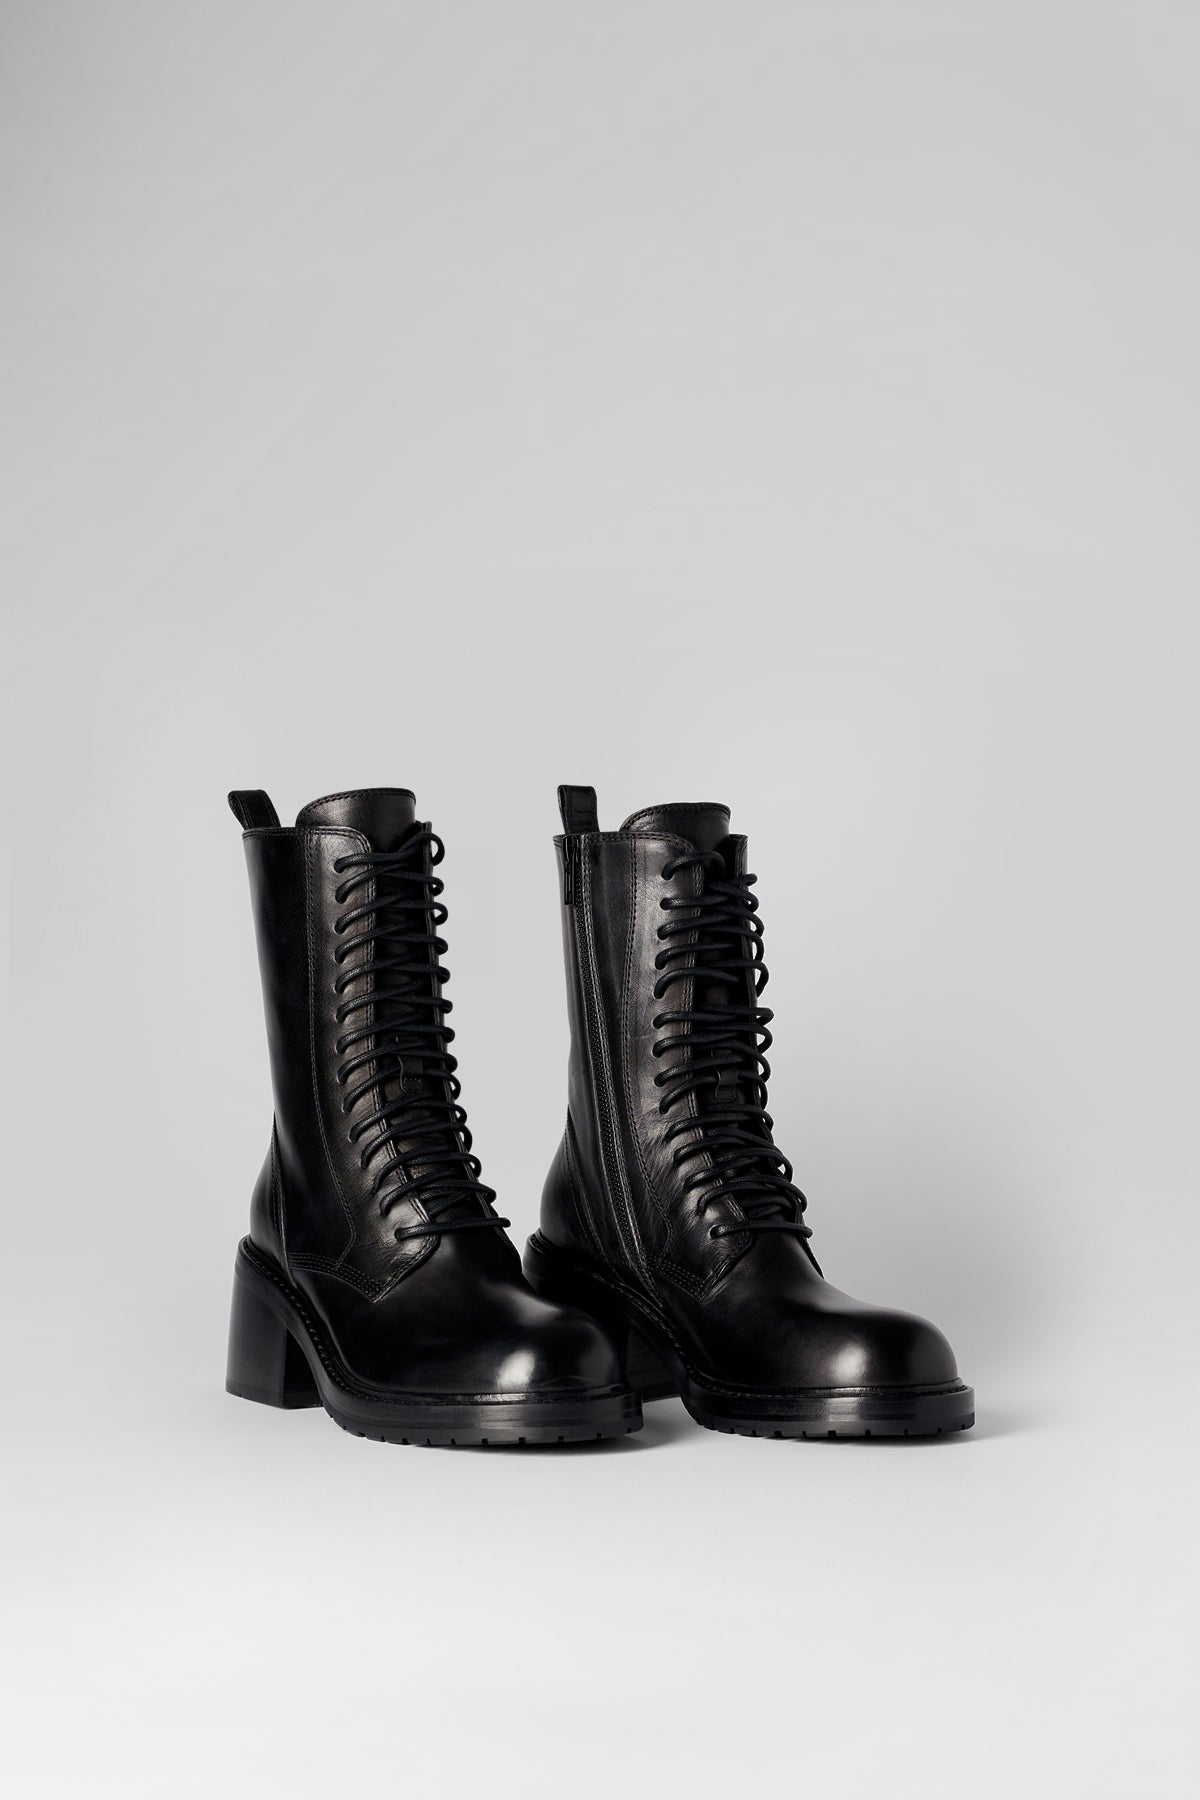 Boots – Ann Demeulemeester